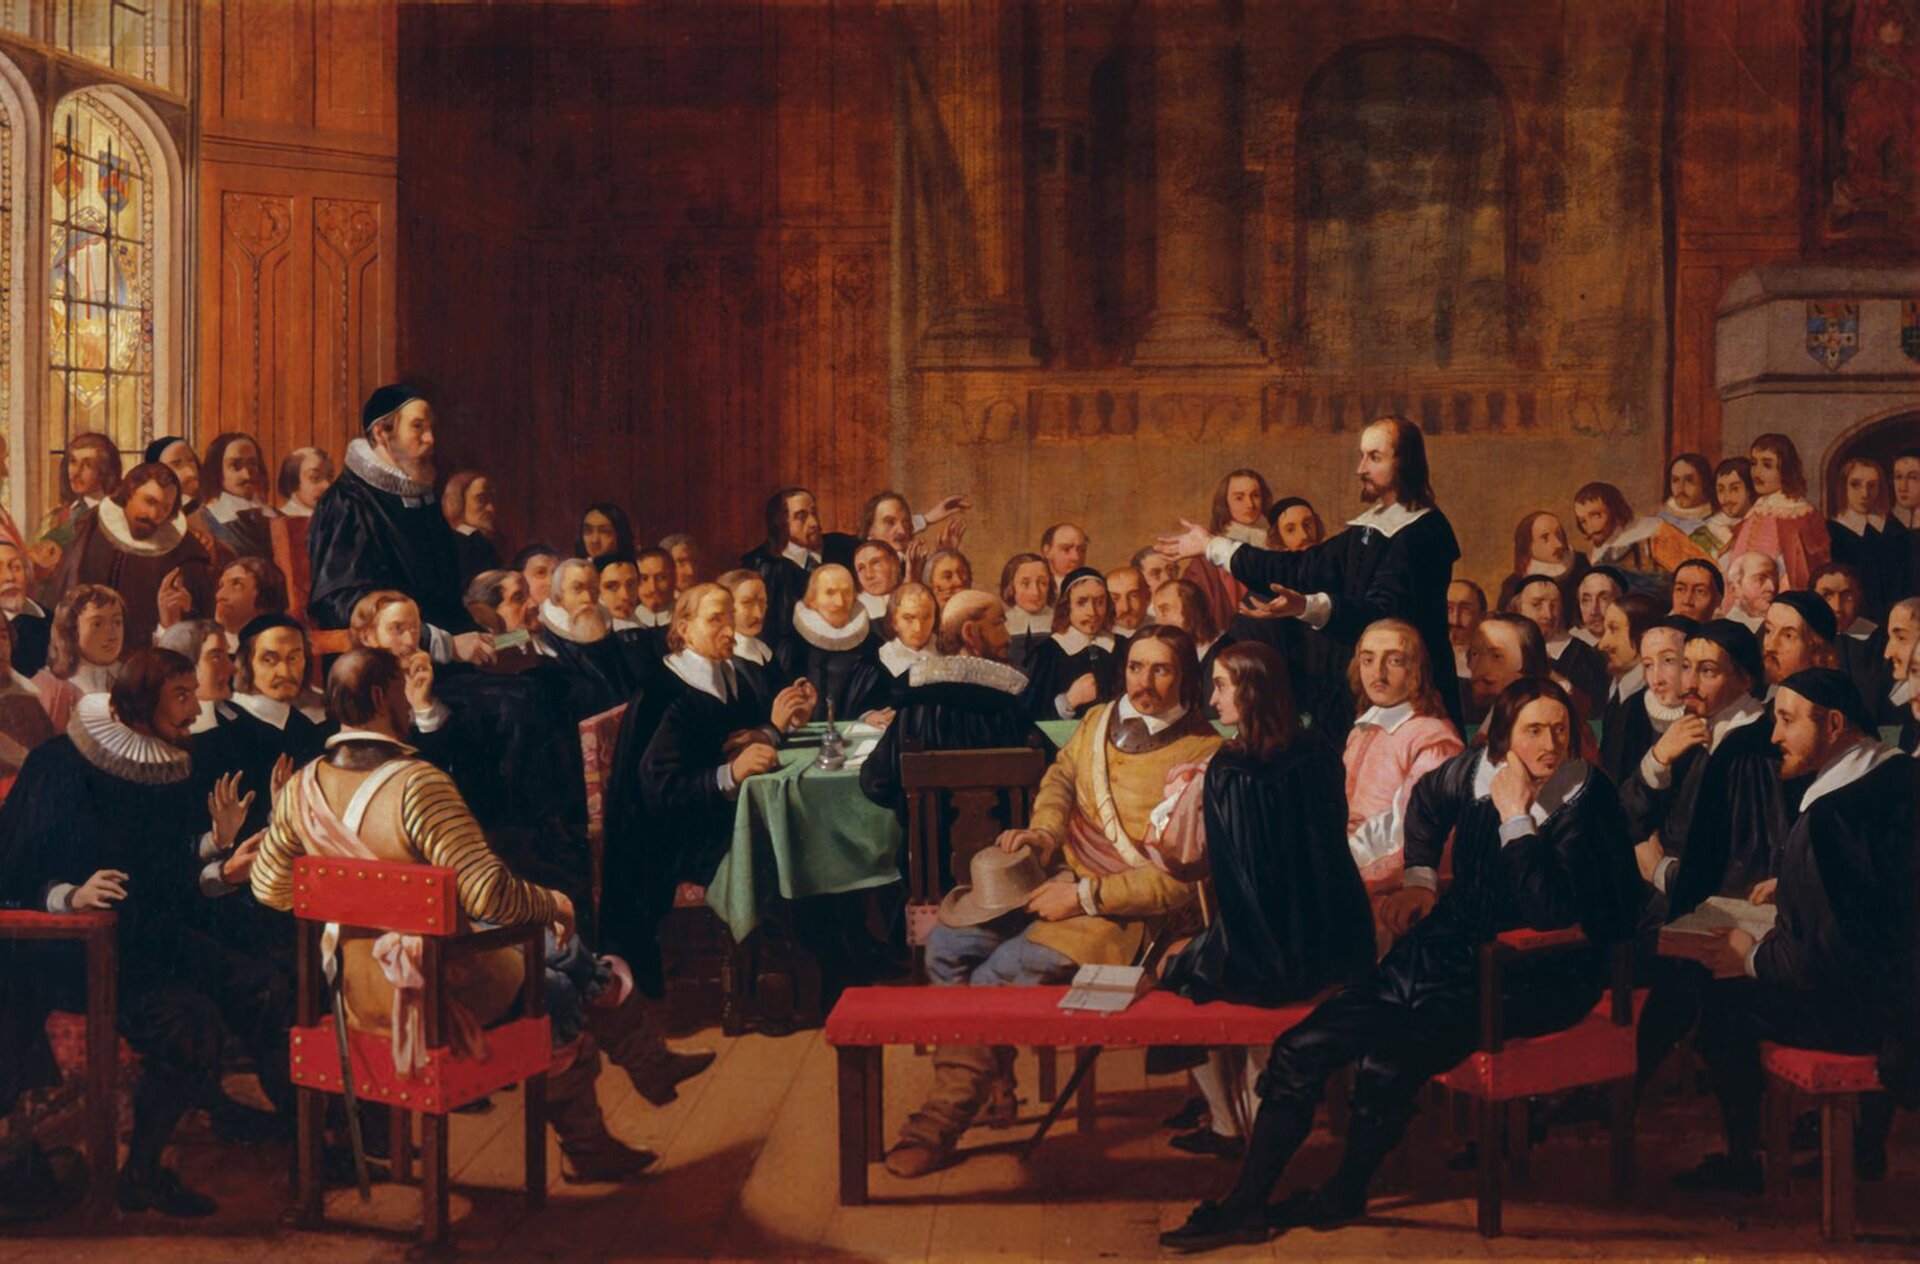 Ilustracja przedstawia grupę dyskutujących ze sobą mężczyzn w wysokiej sali. Większość jest ubrana w czarne stroje z szerokimi, białymi kołnierzami.